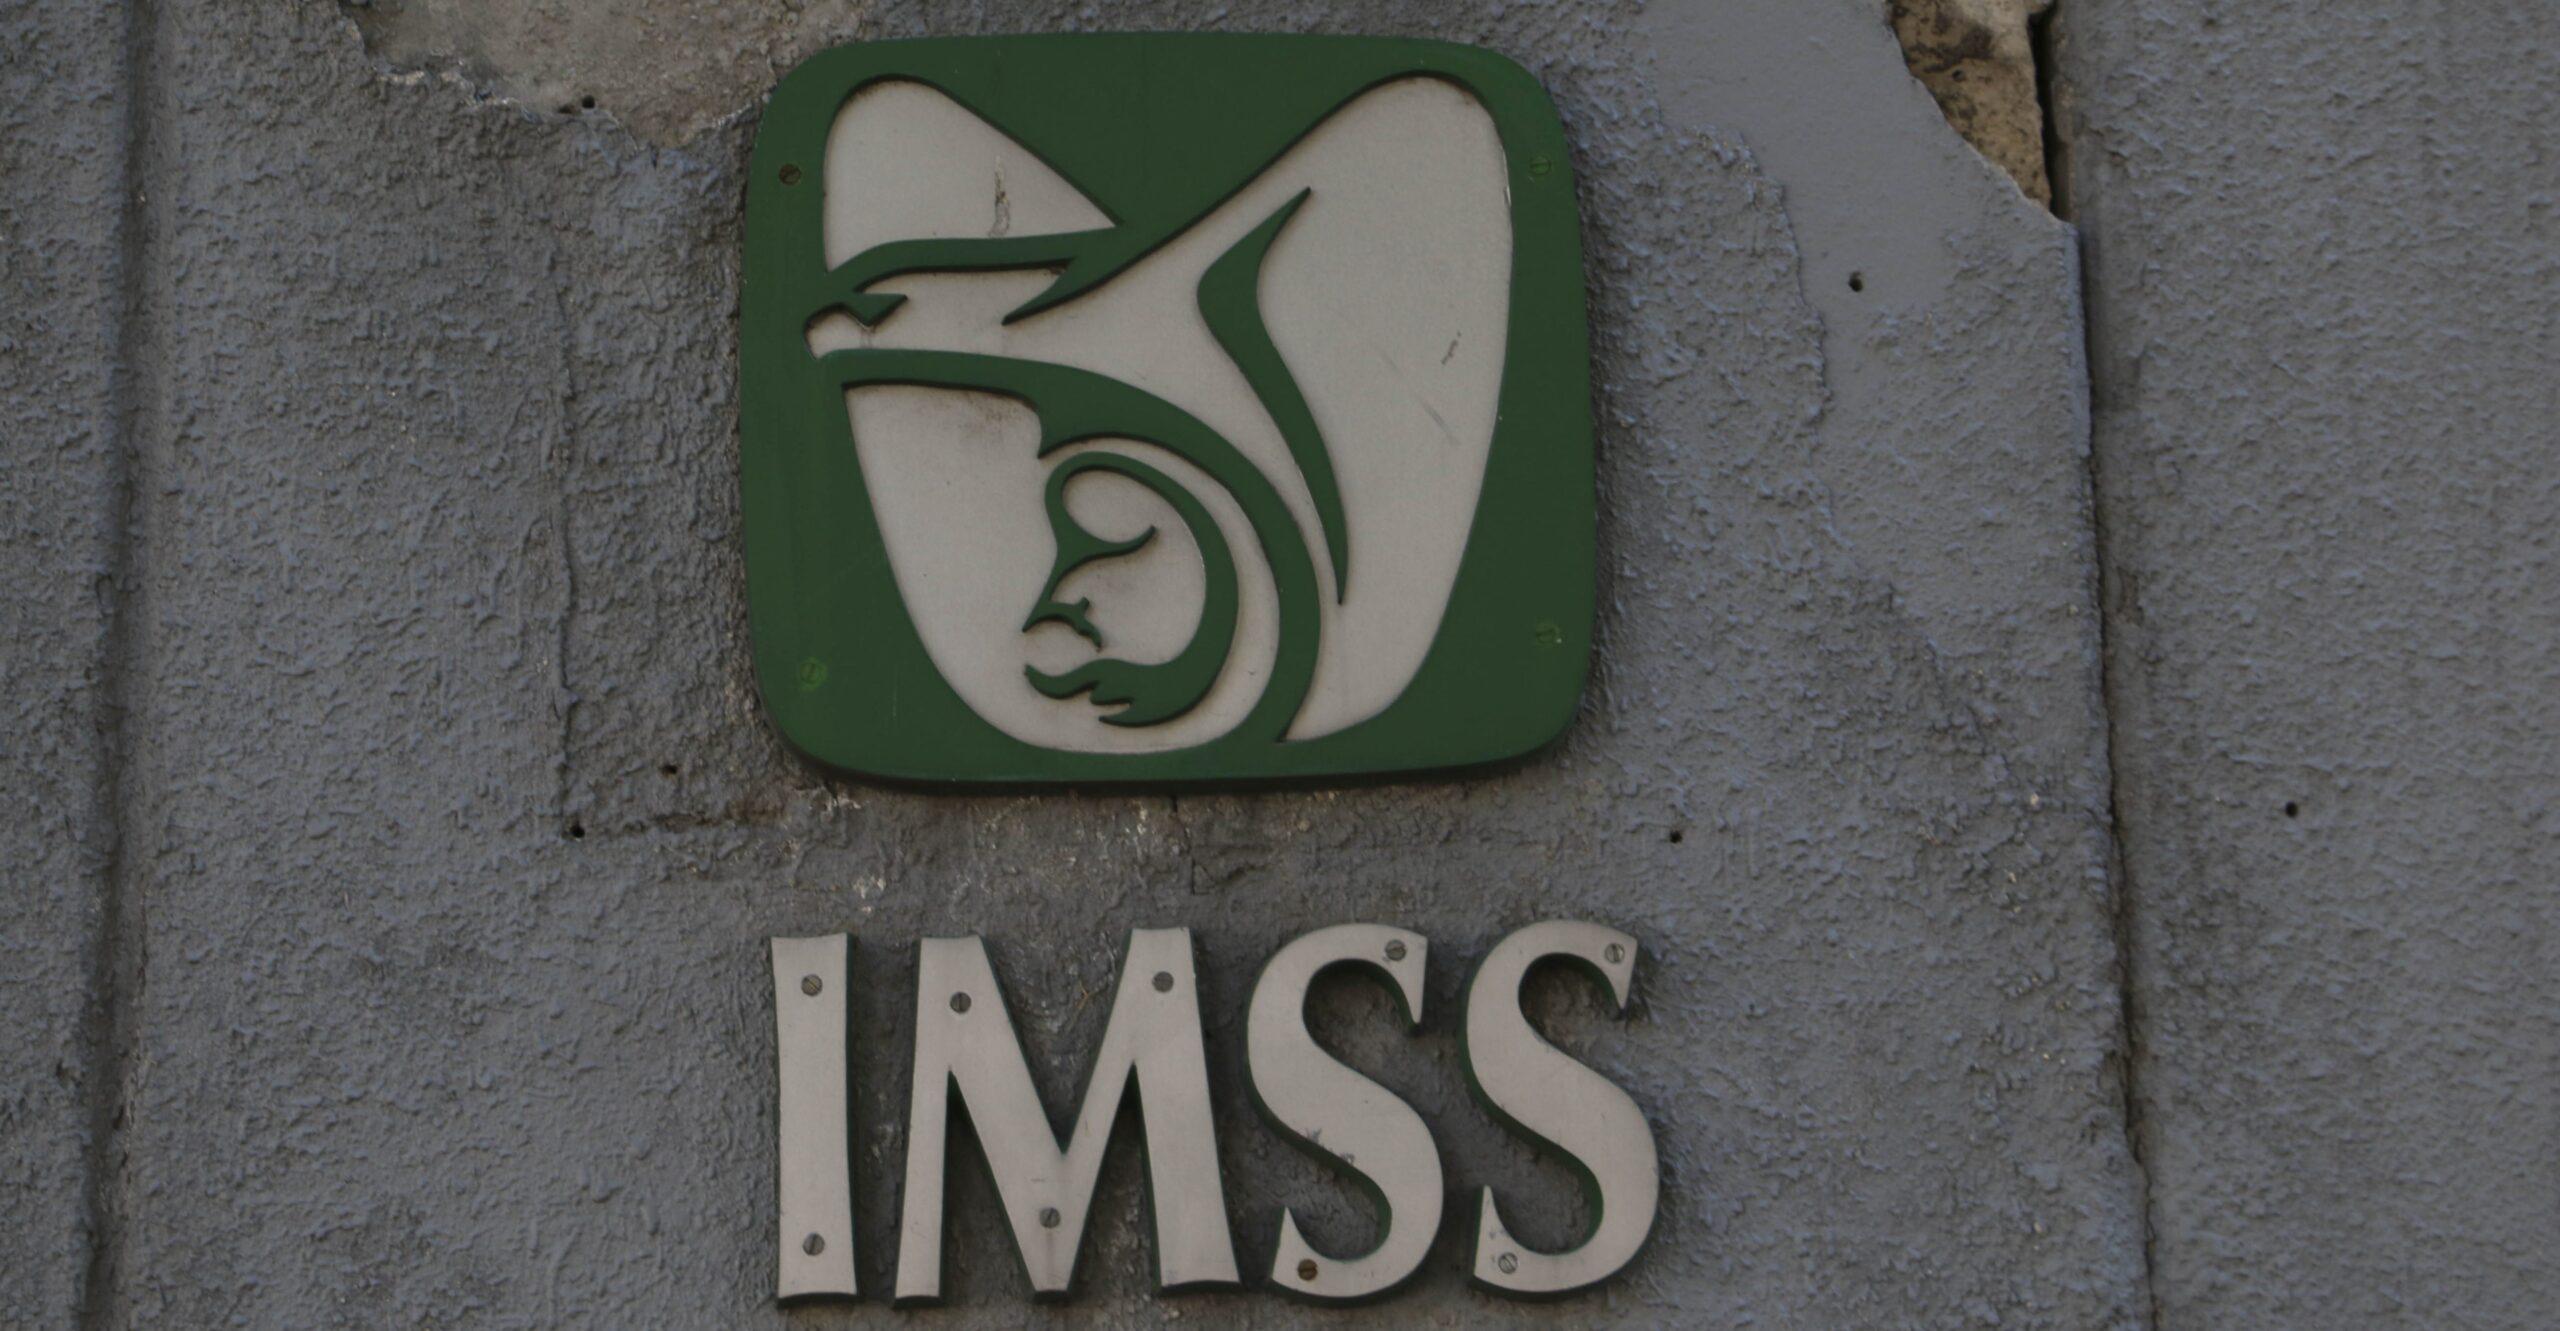 Proveedores que venden millones al IMSS no aseguran ni pagan cuotas de sus empleados